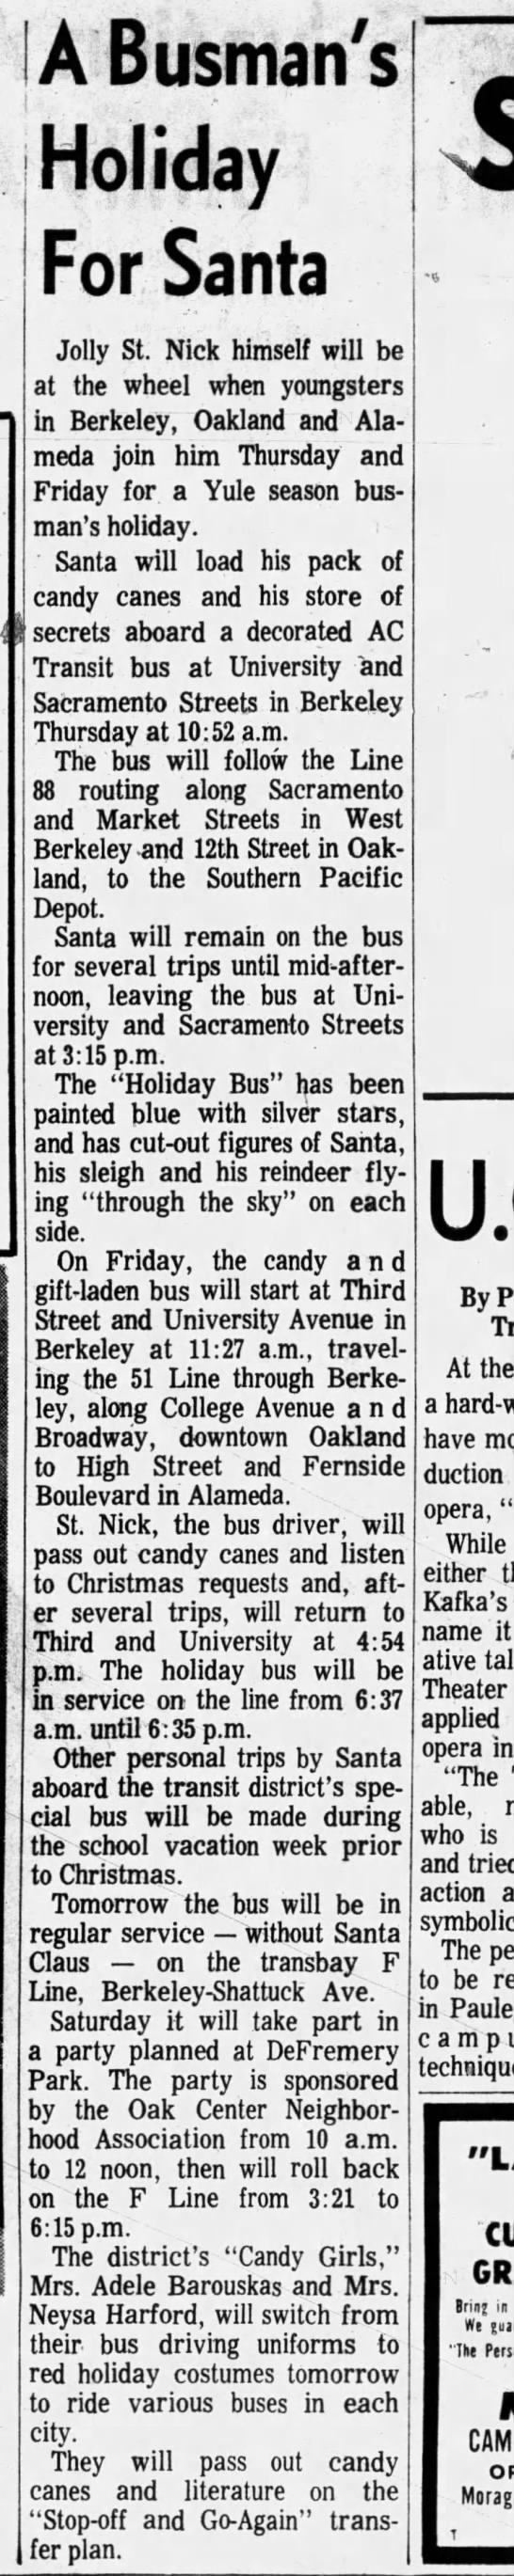 A Busman's Holiday for Santa - Oakland Tribune December 07, 1965 - 